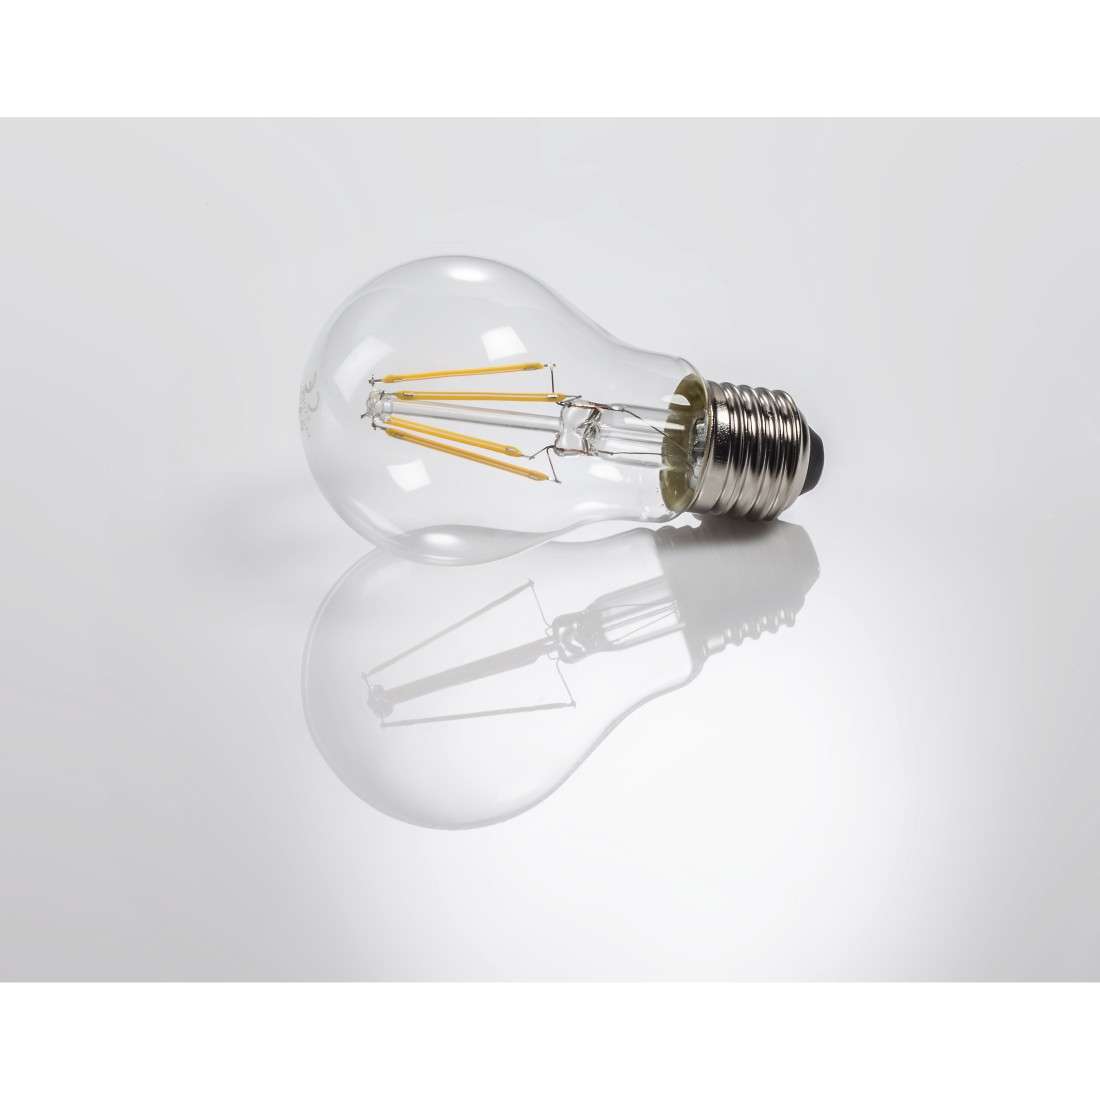 LED-Filament, E27, 806lm ersetzt 60W, Glühlampe, Warmweiß, klar, dimmbar